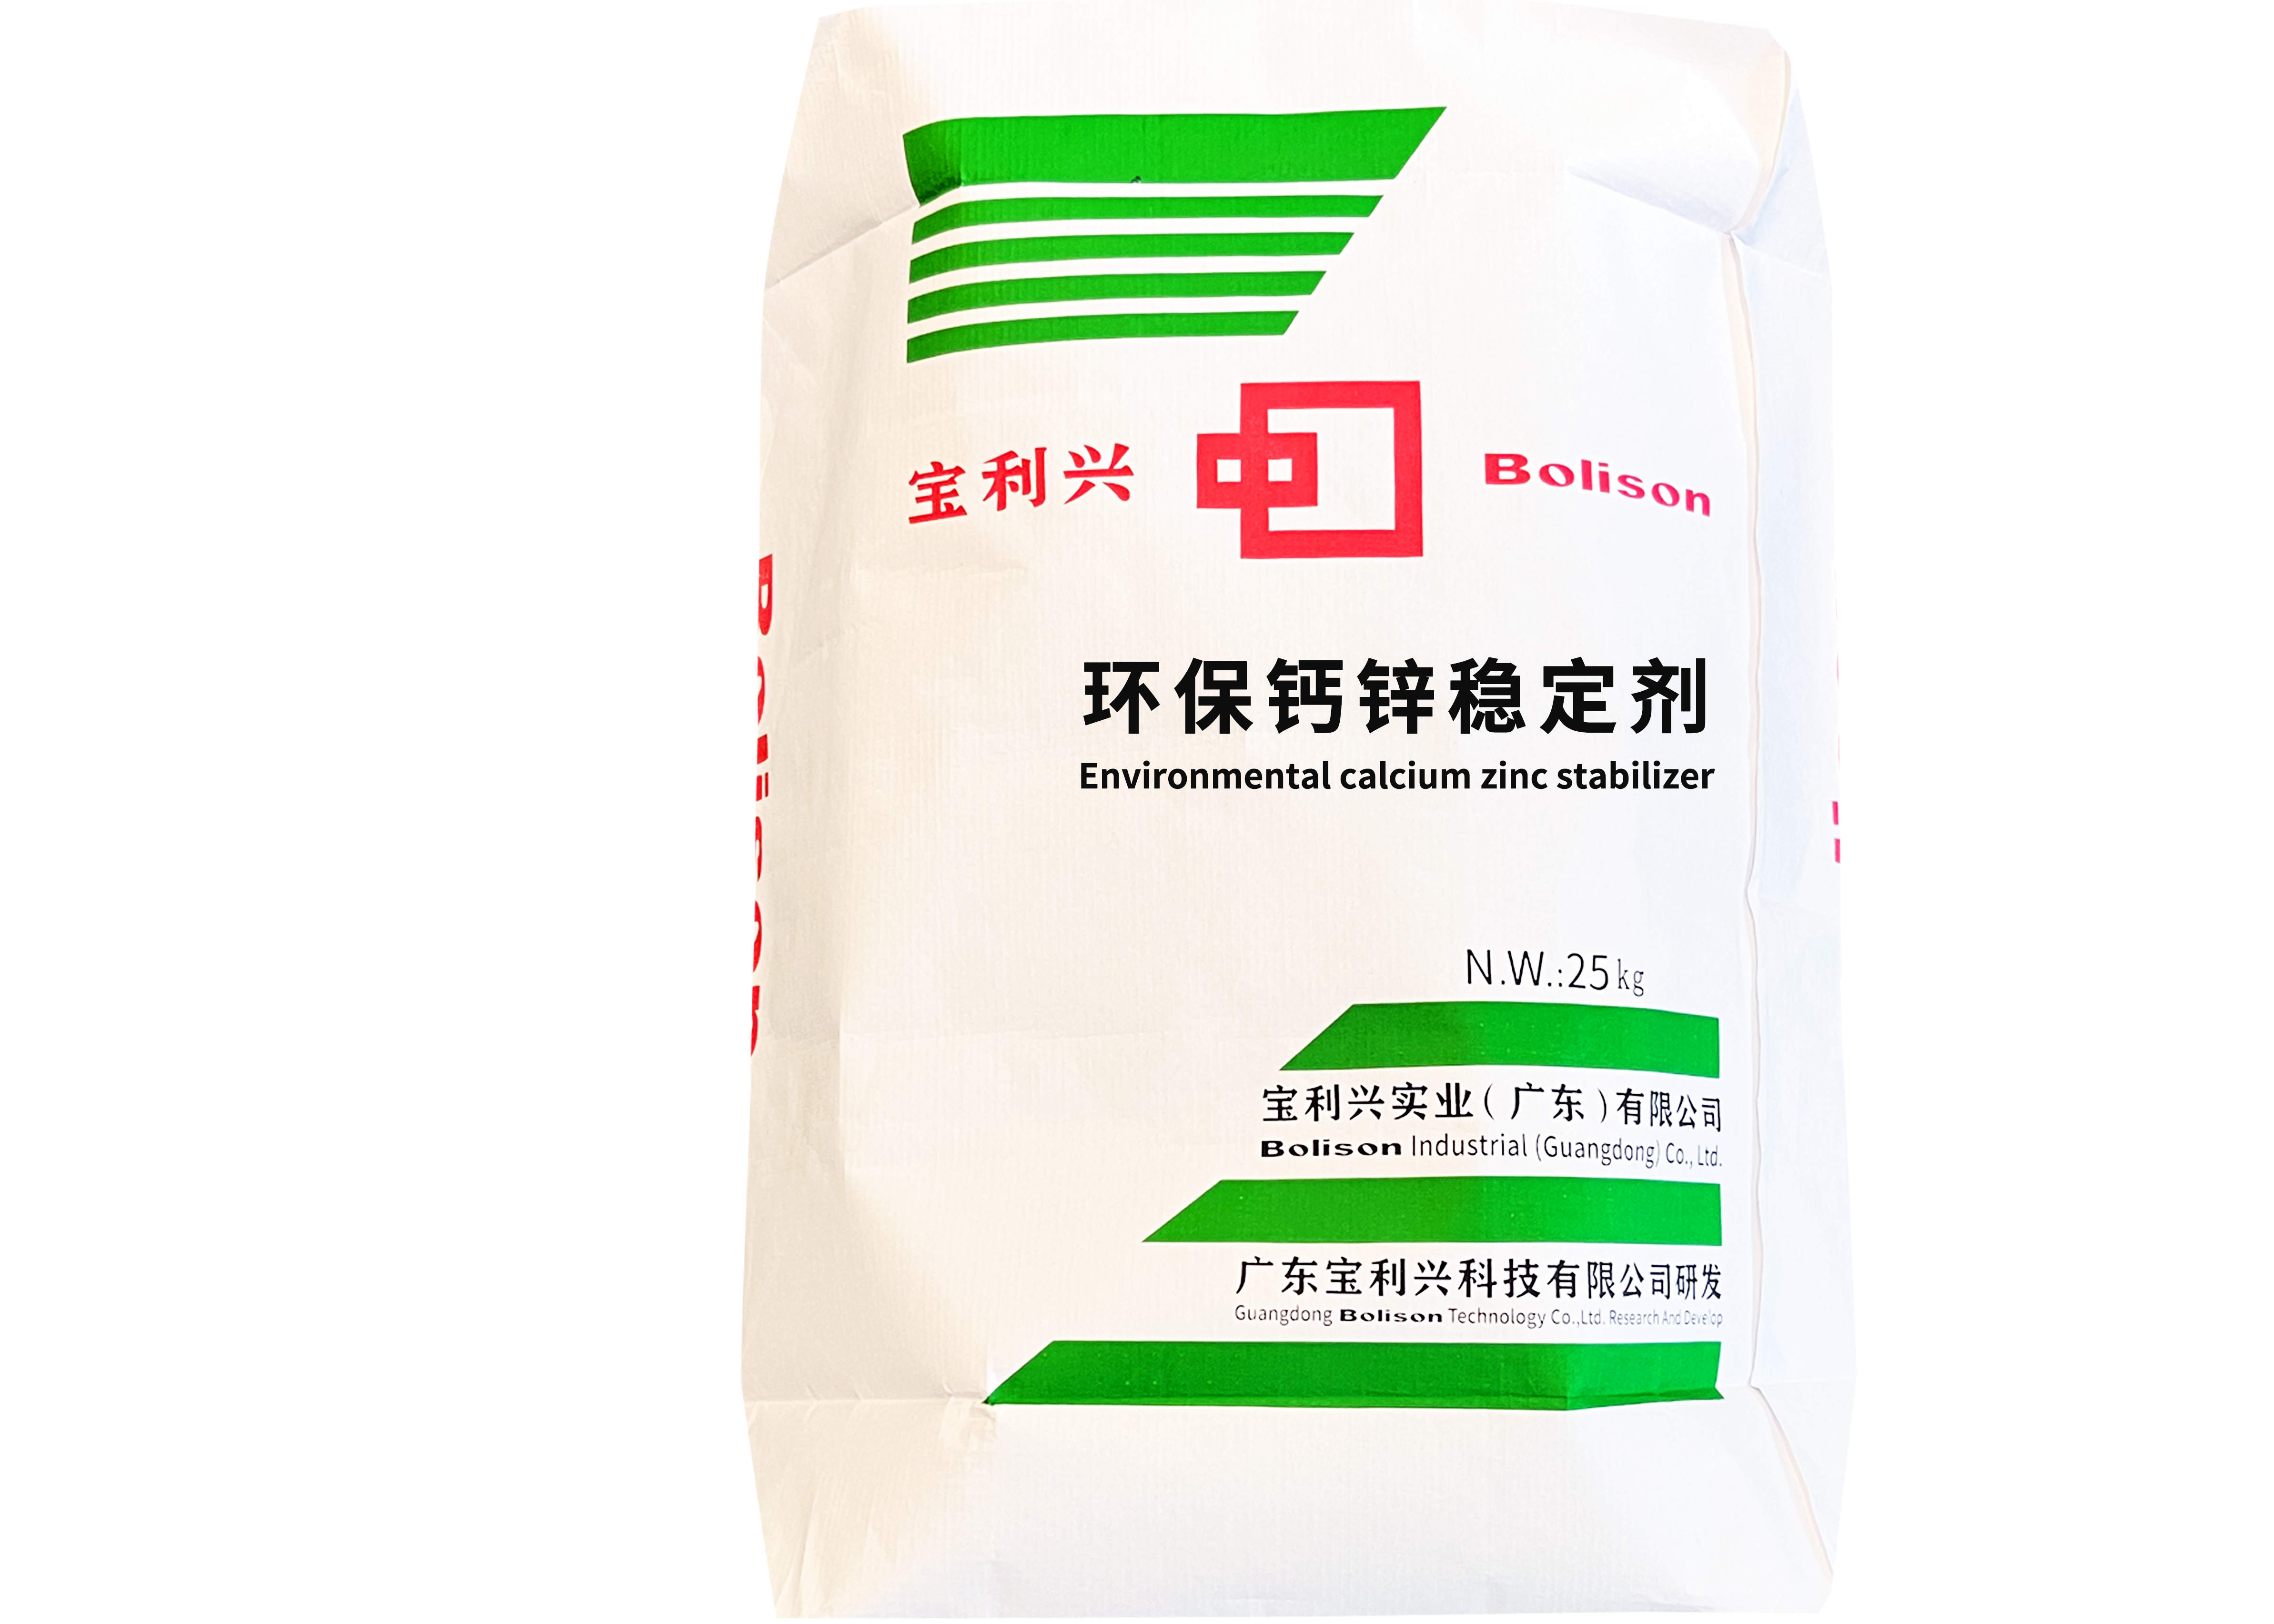 Environmental calcium zinc stabilizer SliderImage